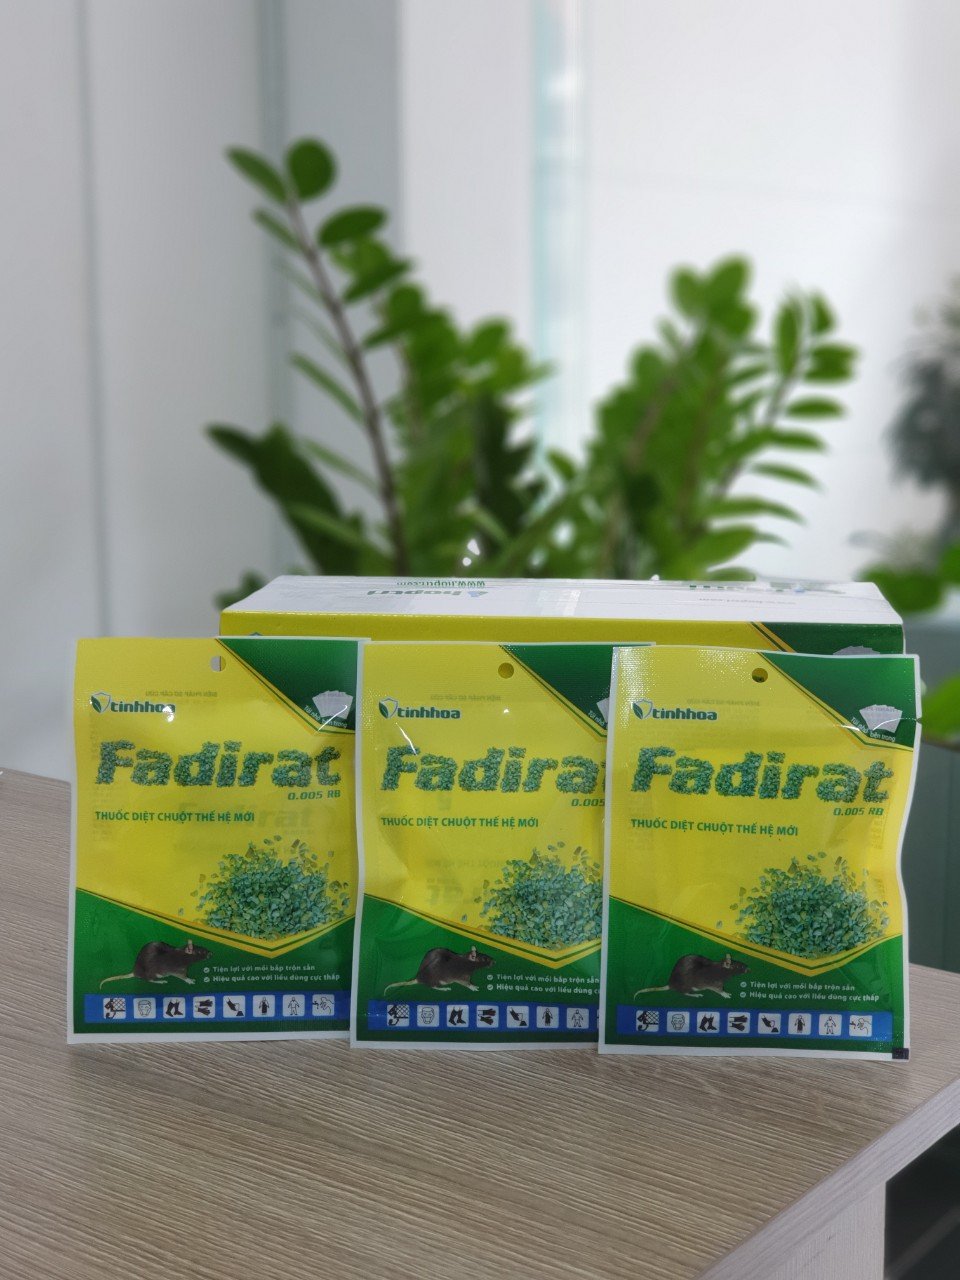 Thuốc diệt chuột thế hệ mới FADIRAT 0.005 RB - Tiện lợi với mồi bắp trộn sẵn - Hiệu quả cao với liều dùng cực thấp (Gói 4 túi x 5g)